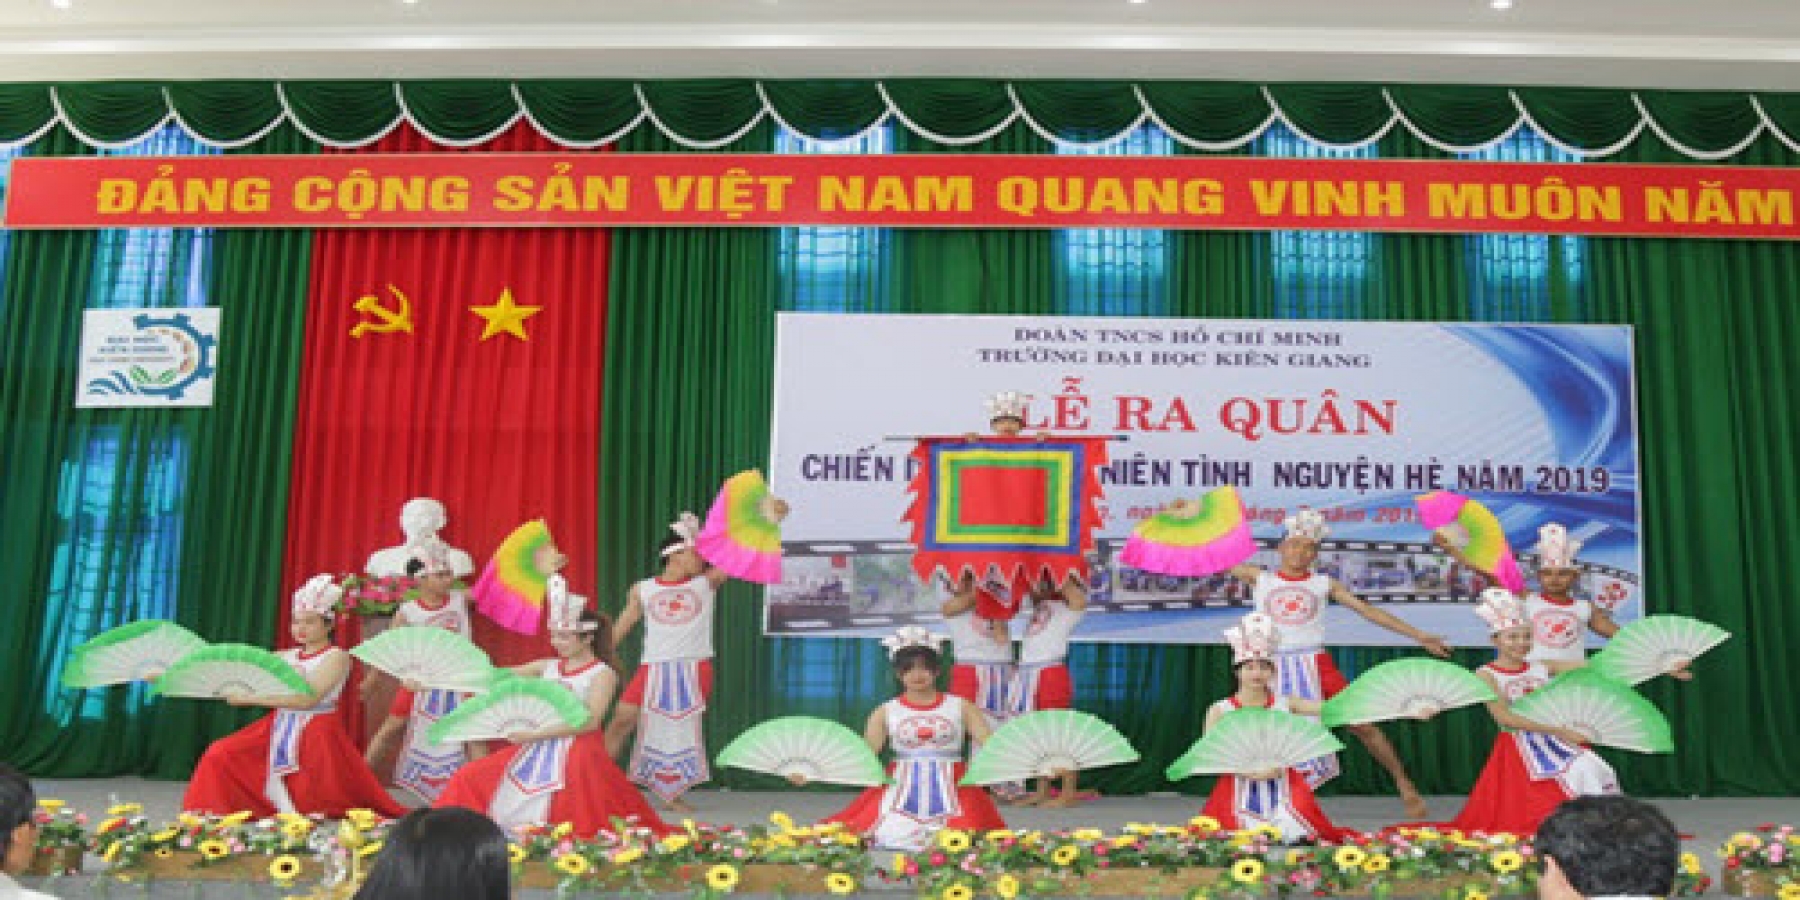 Trường Đại học Kiên Giang tổ chức  Lễ ra quân Chiến dịch thanh niên tình nguyện hè năm 2019